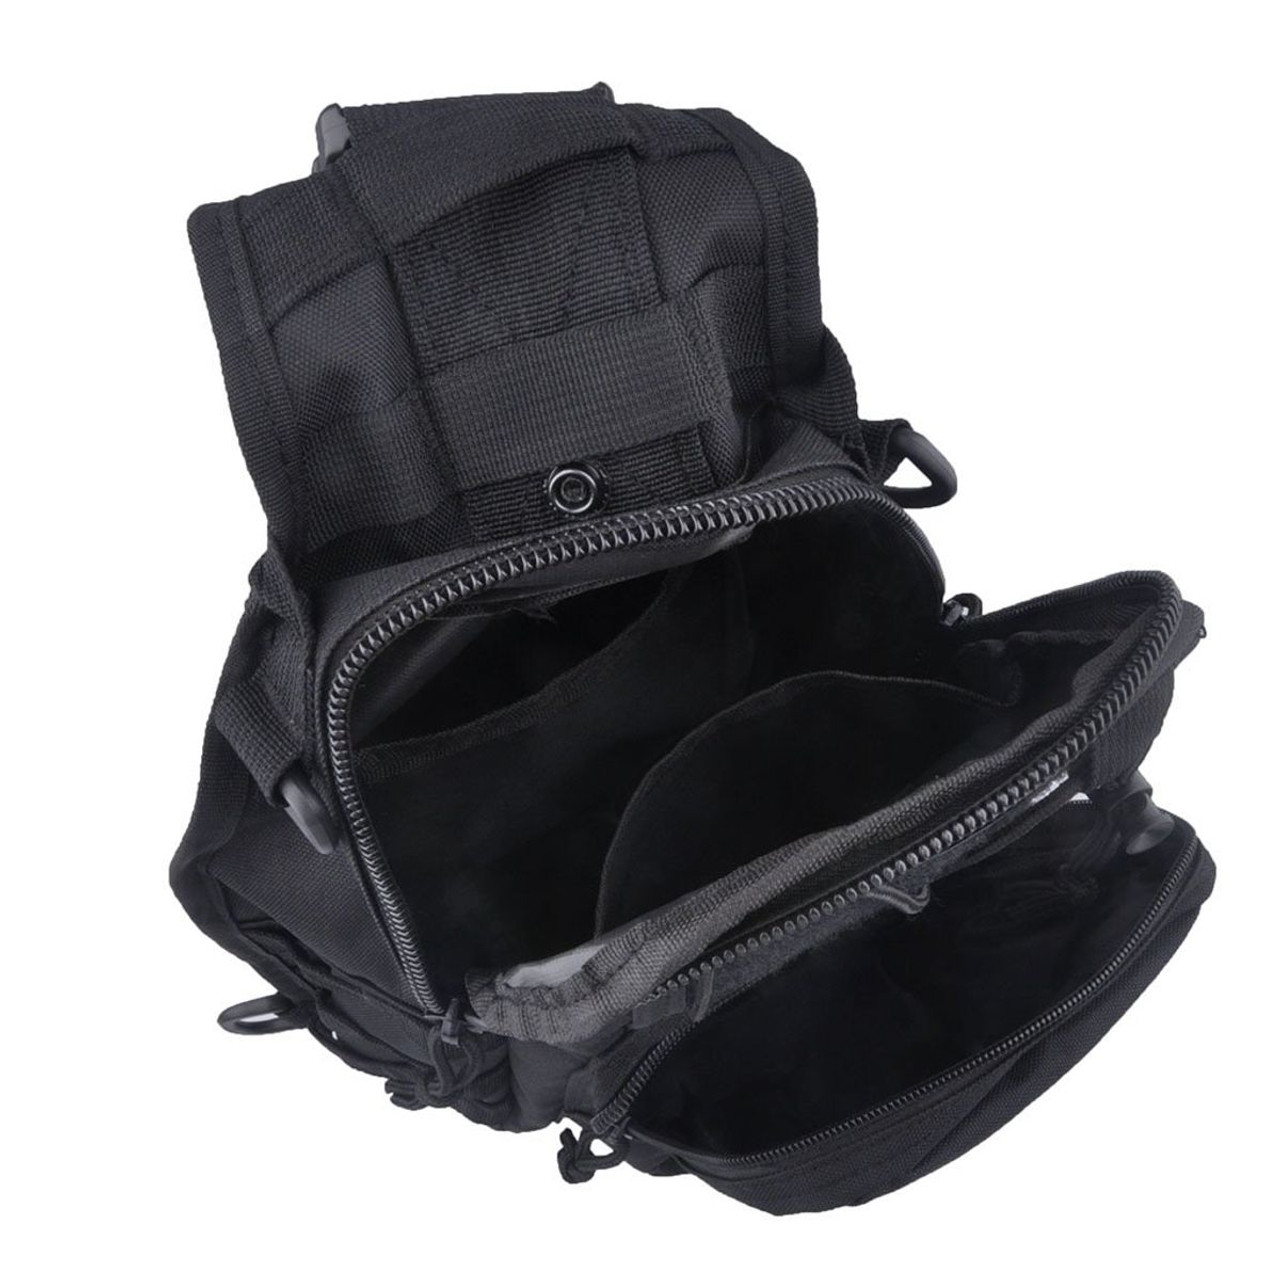 Tactical Military Sling Shoulder Bag product image